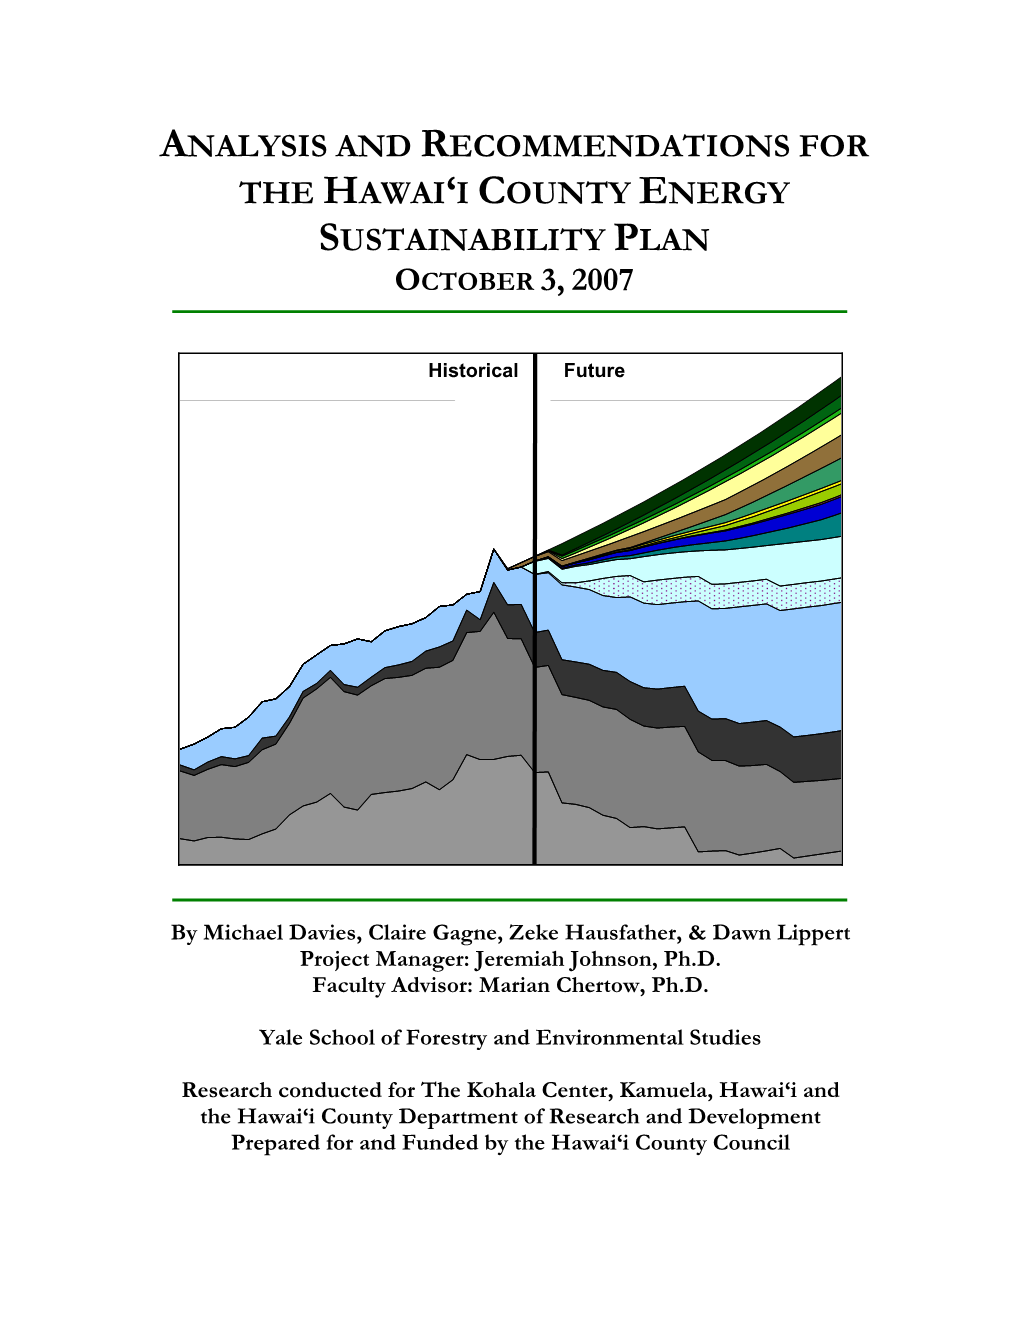 The Hawai'i County Energy